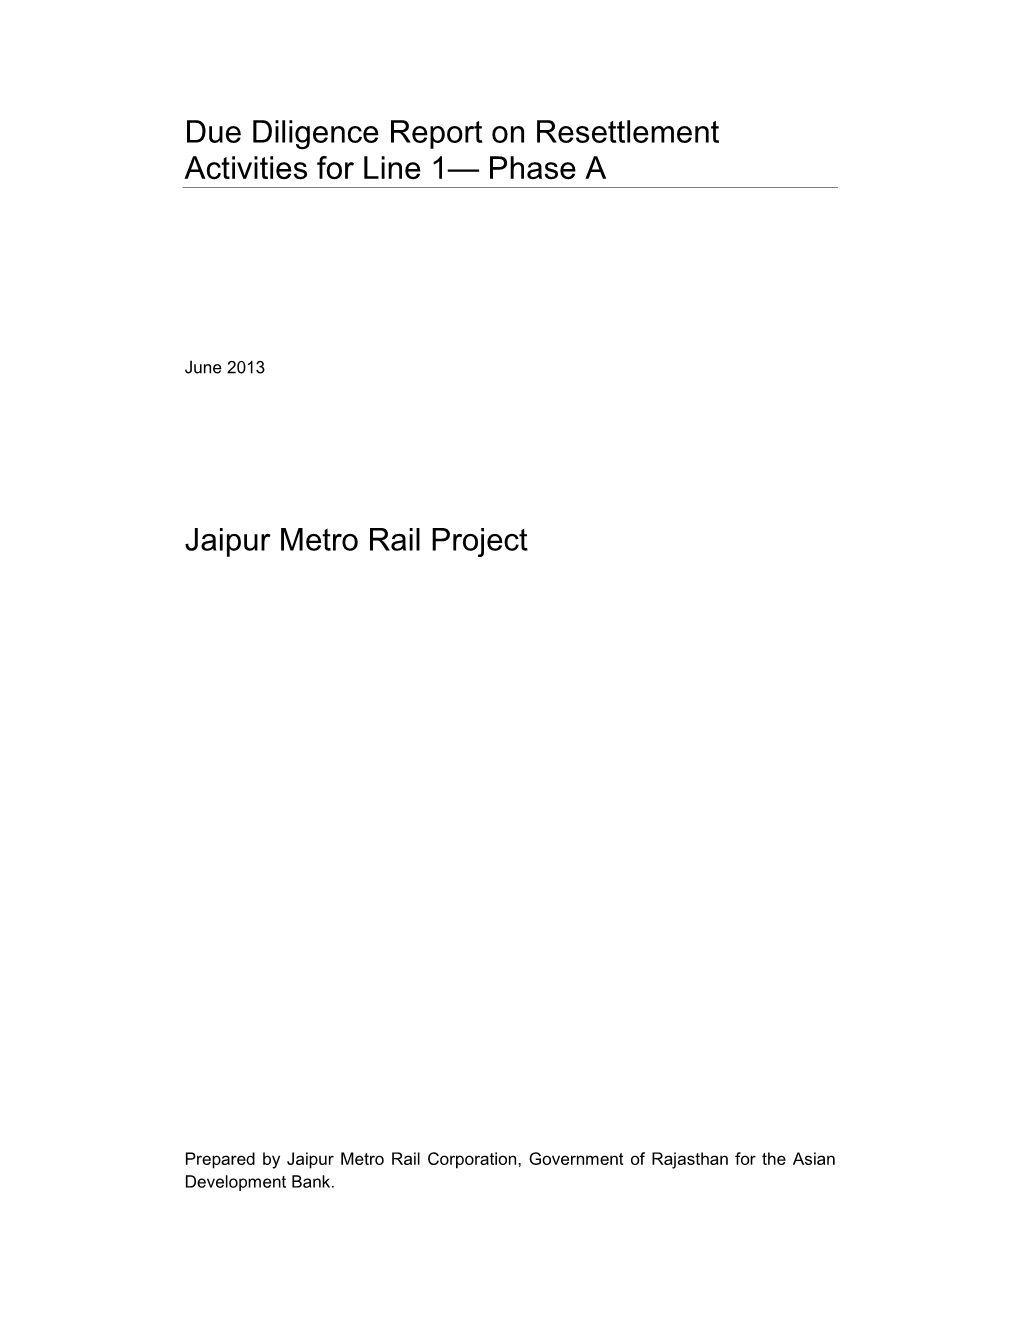 46417-001: Jaipur Metro Rail Line 1-Phase